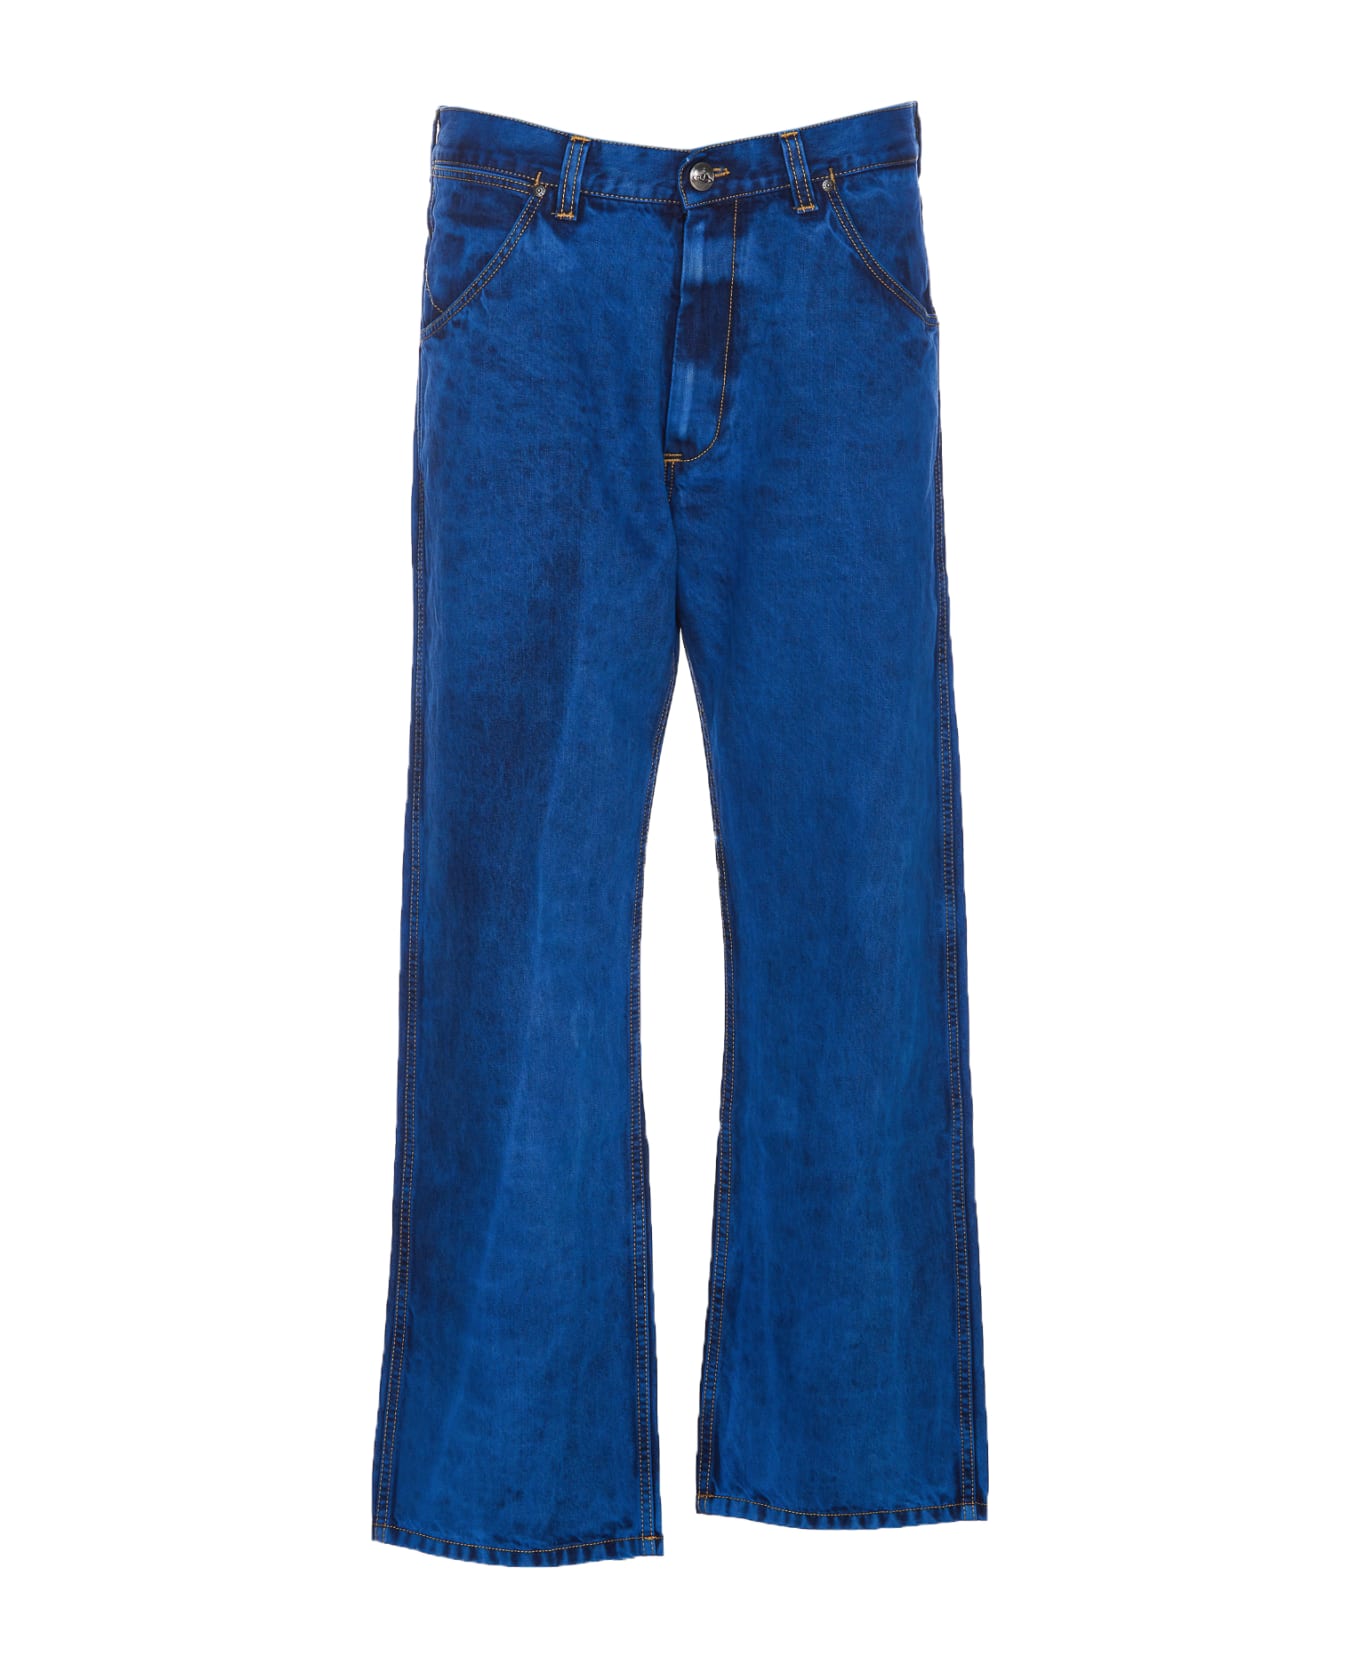 Vivienne Westwood Ranch Jeans - Blue